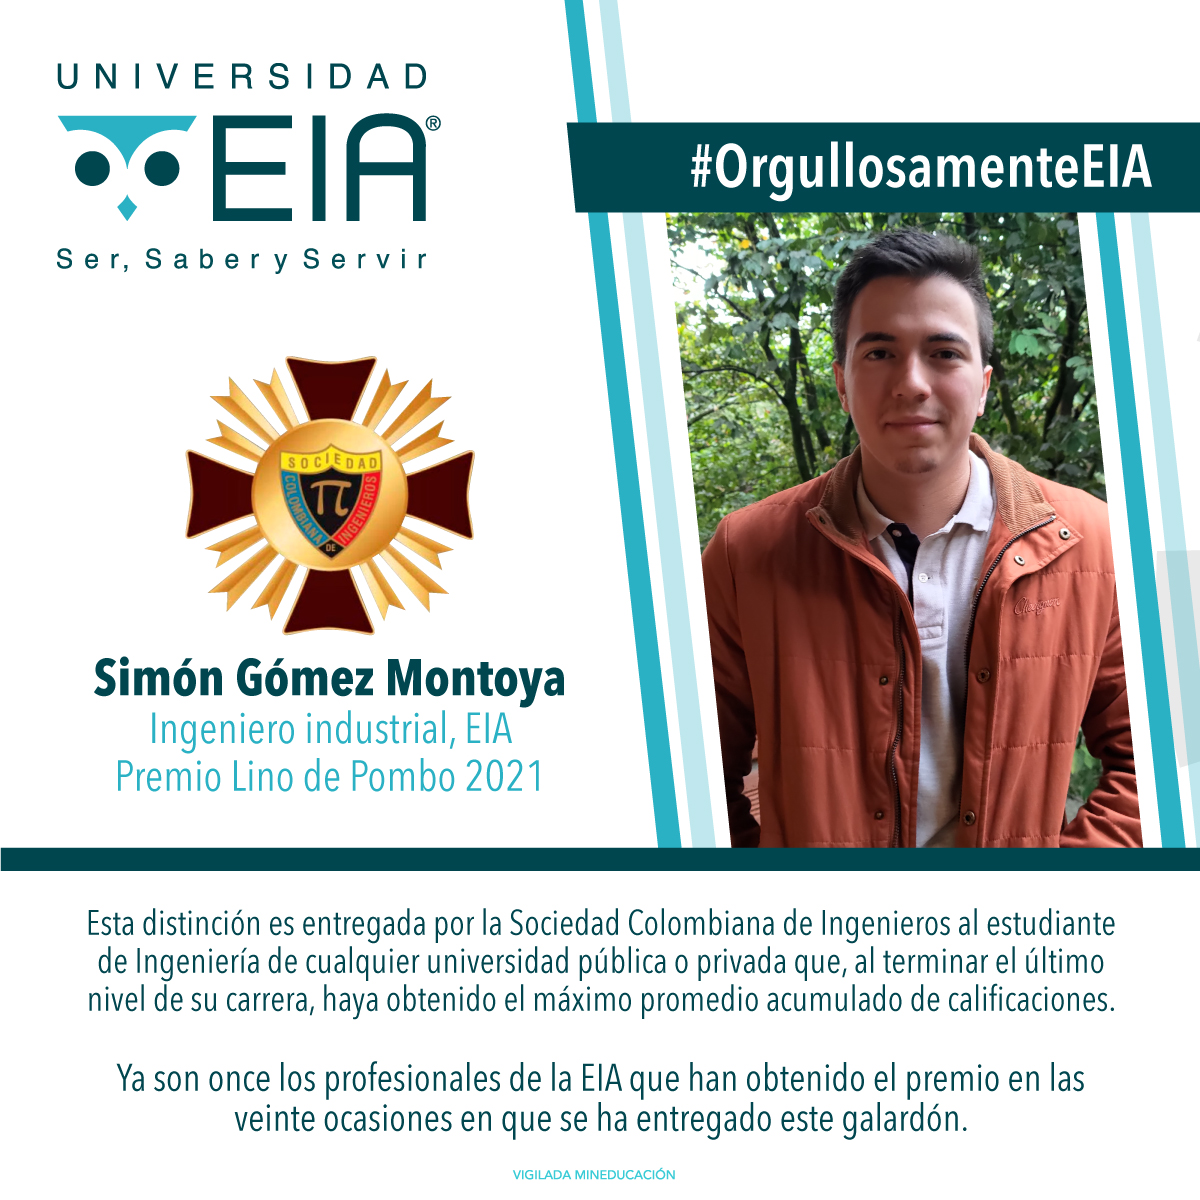 Simón Gómez Montoya, Ingeniero industrial de EIA, Premio Lino de Pombo 2021